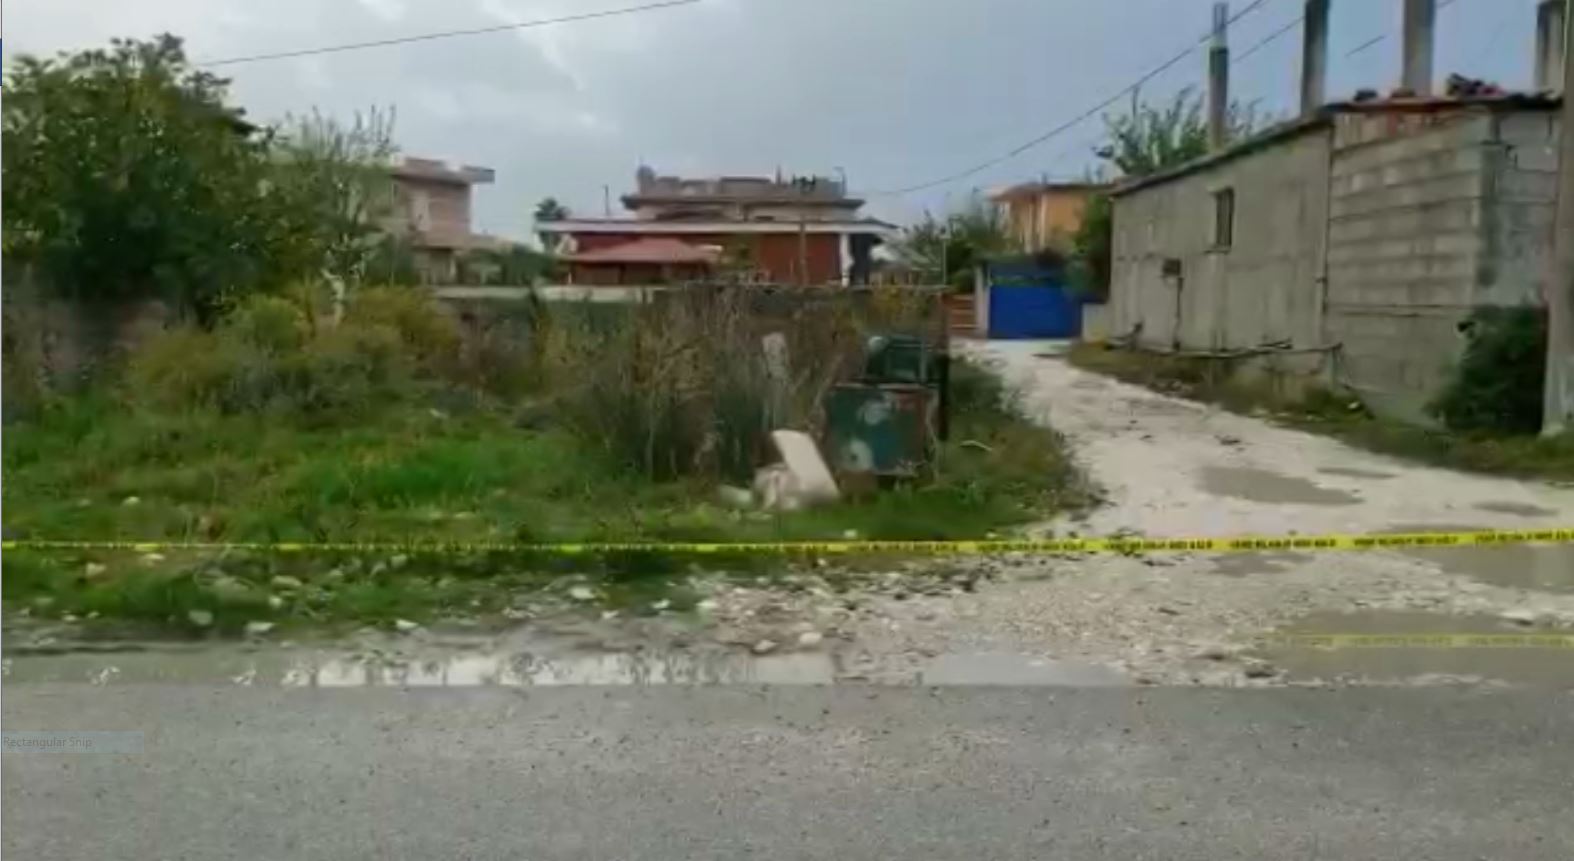 Një plagë në shpatull, çfarë i shkaktoi vdekjen 34 vjeçarit të gjetur pajetë në Vlorë